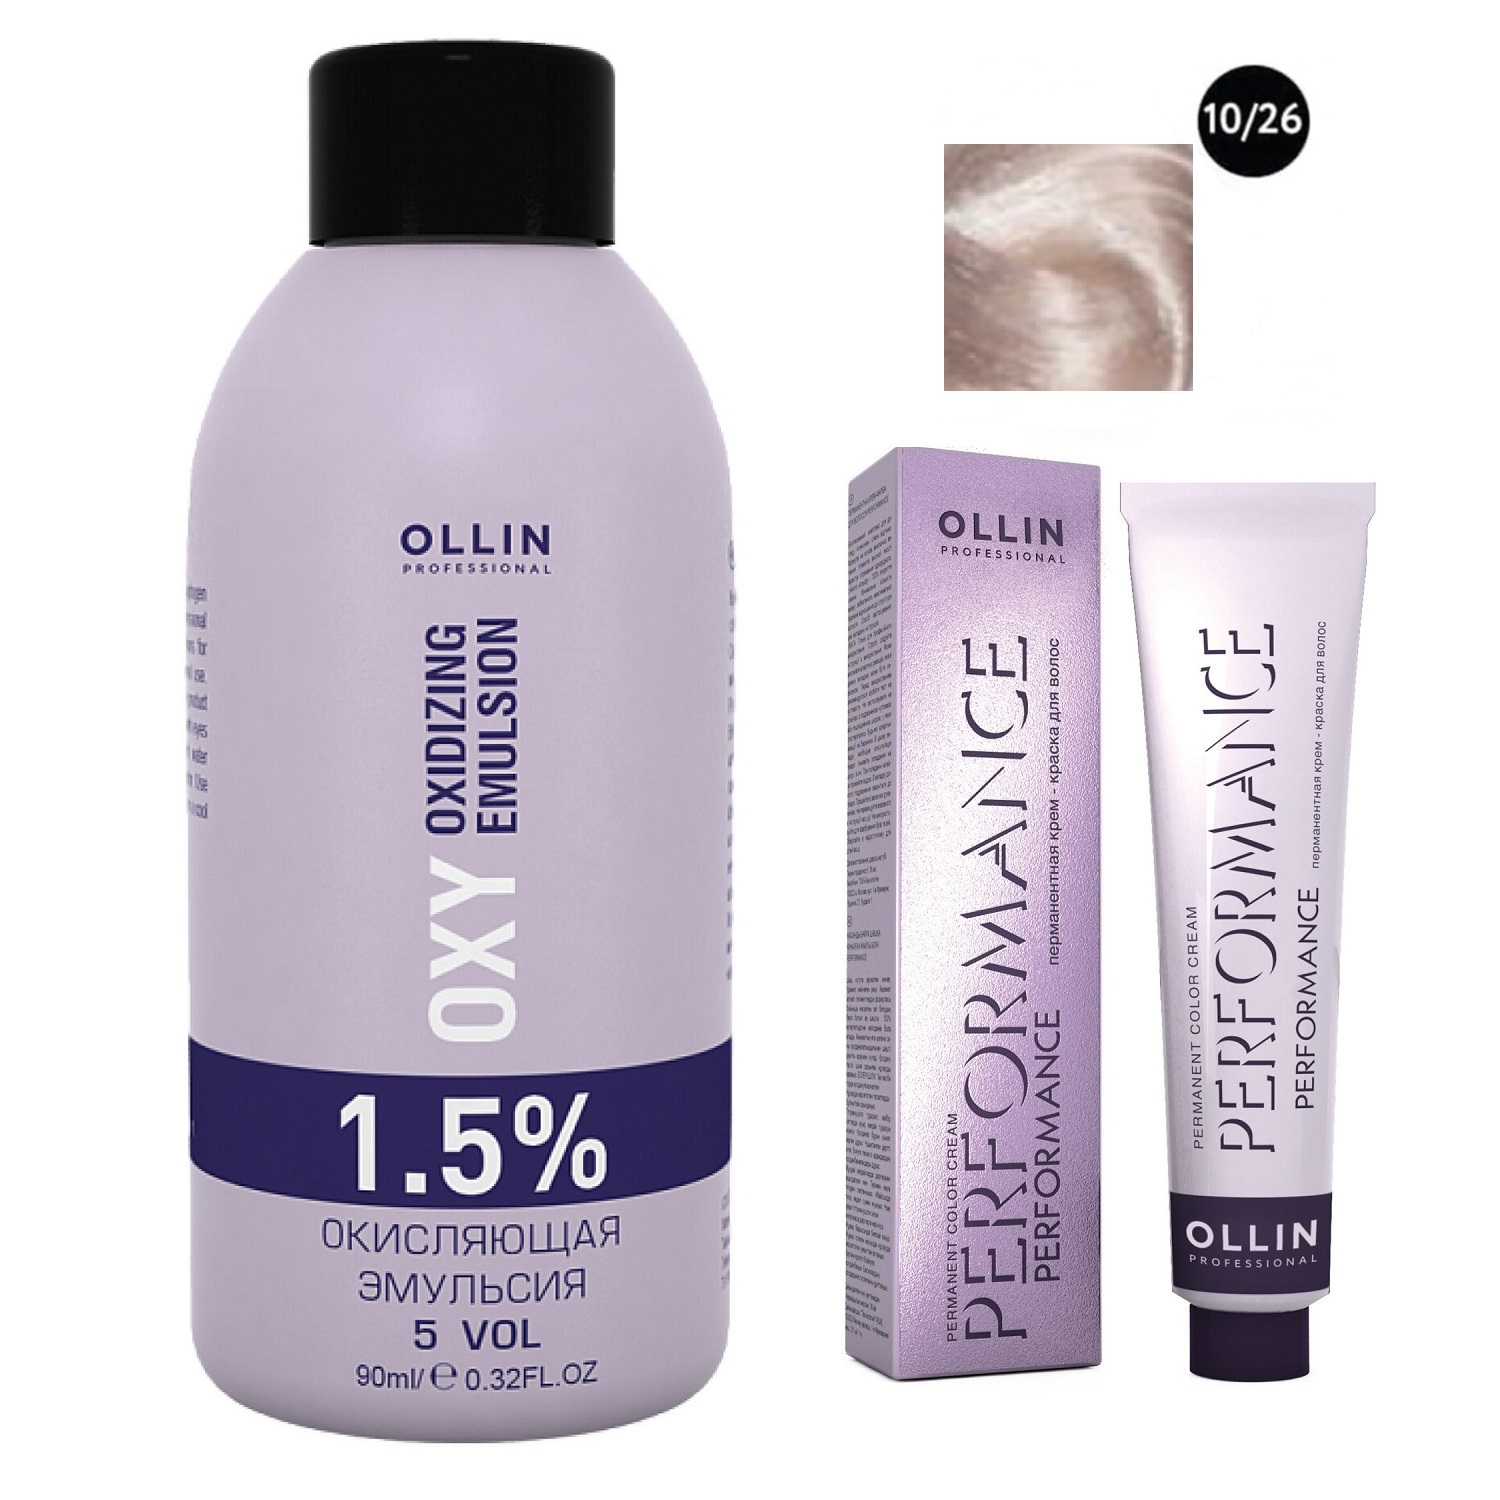 Ollin Professional Набор Перманентная крем-краска для волос Ollin Color оттенок 10/26 светлый блондин розовый 60 мл + Окисляющая эмульсия Oxy 1,5% 90 мл (Ollin Professional, Performance) цена и фото